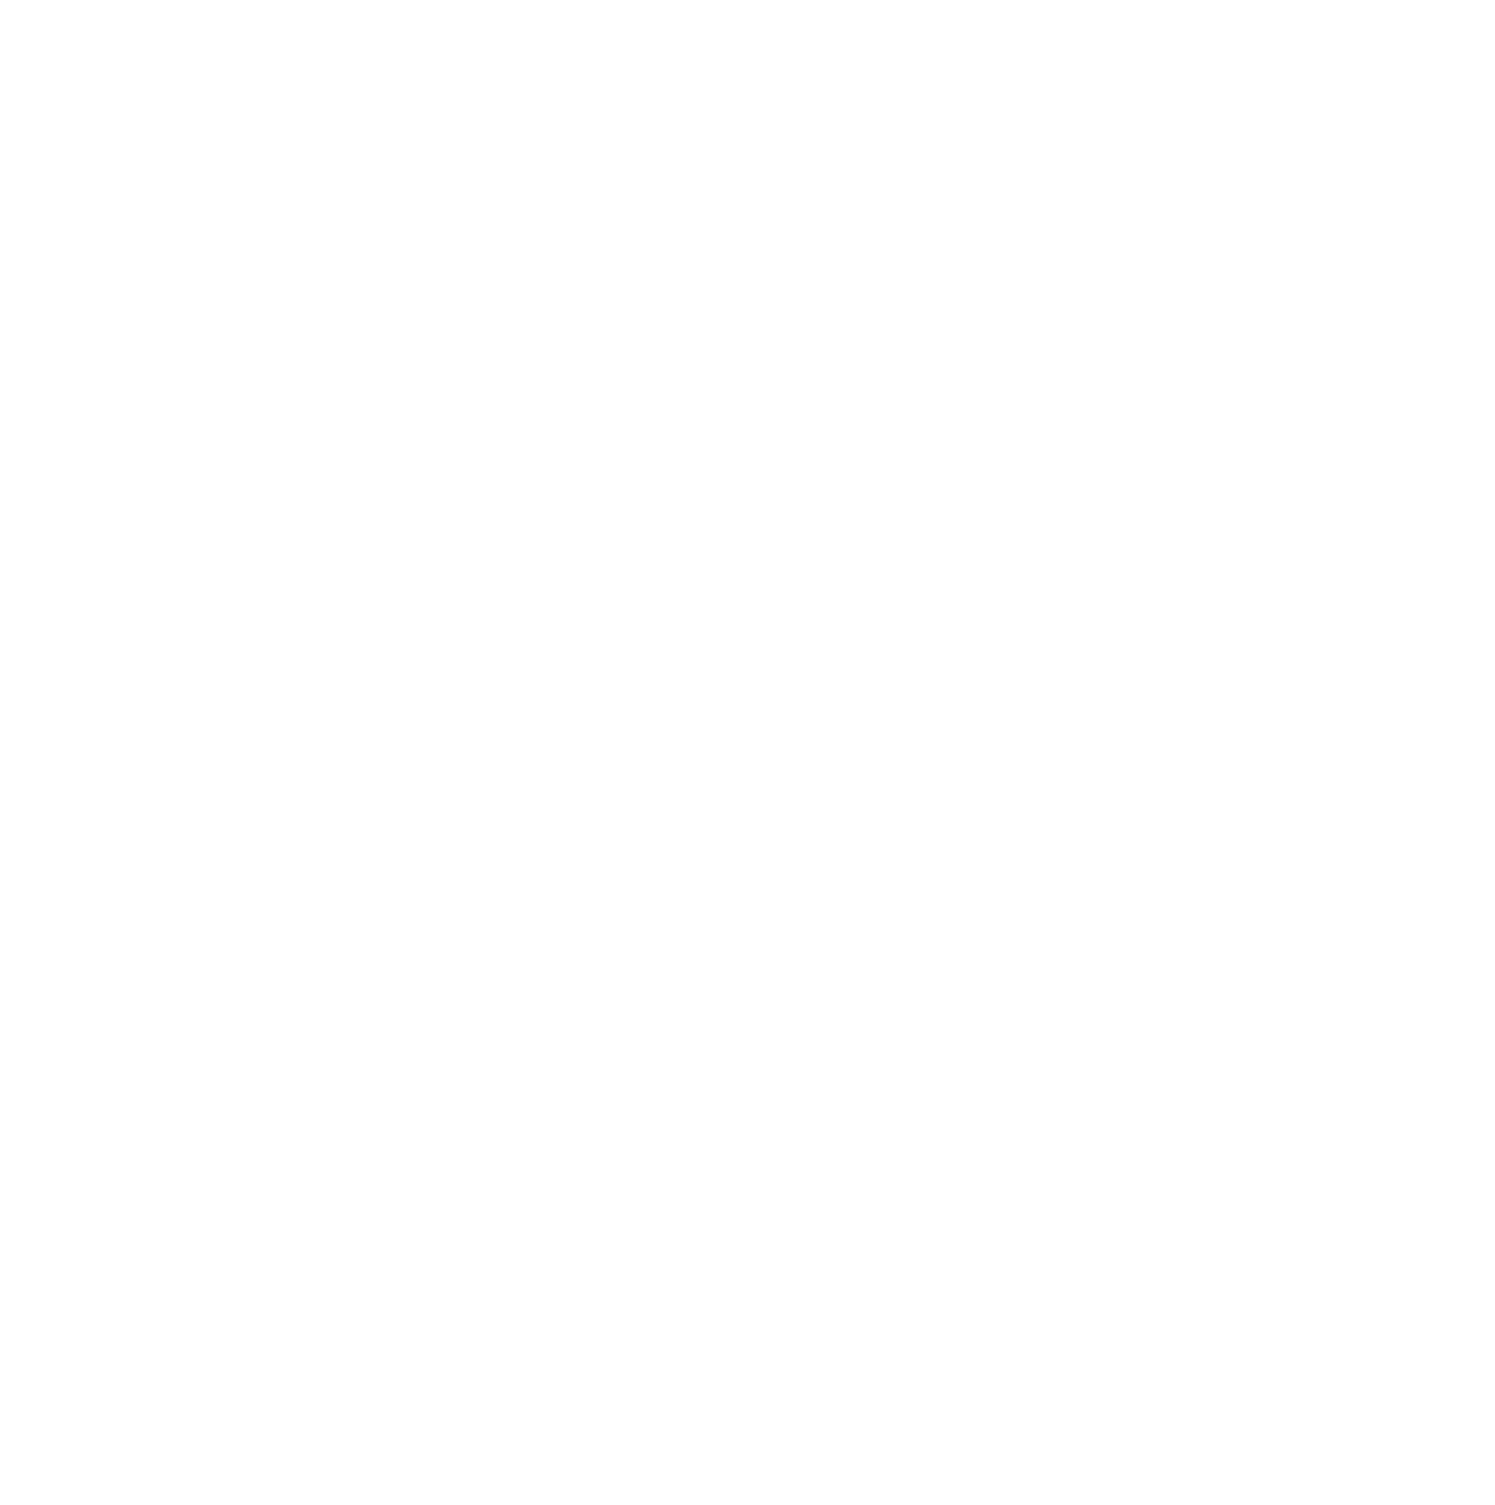 Photronics logo for dark backgrounds (transparent PNG)